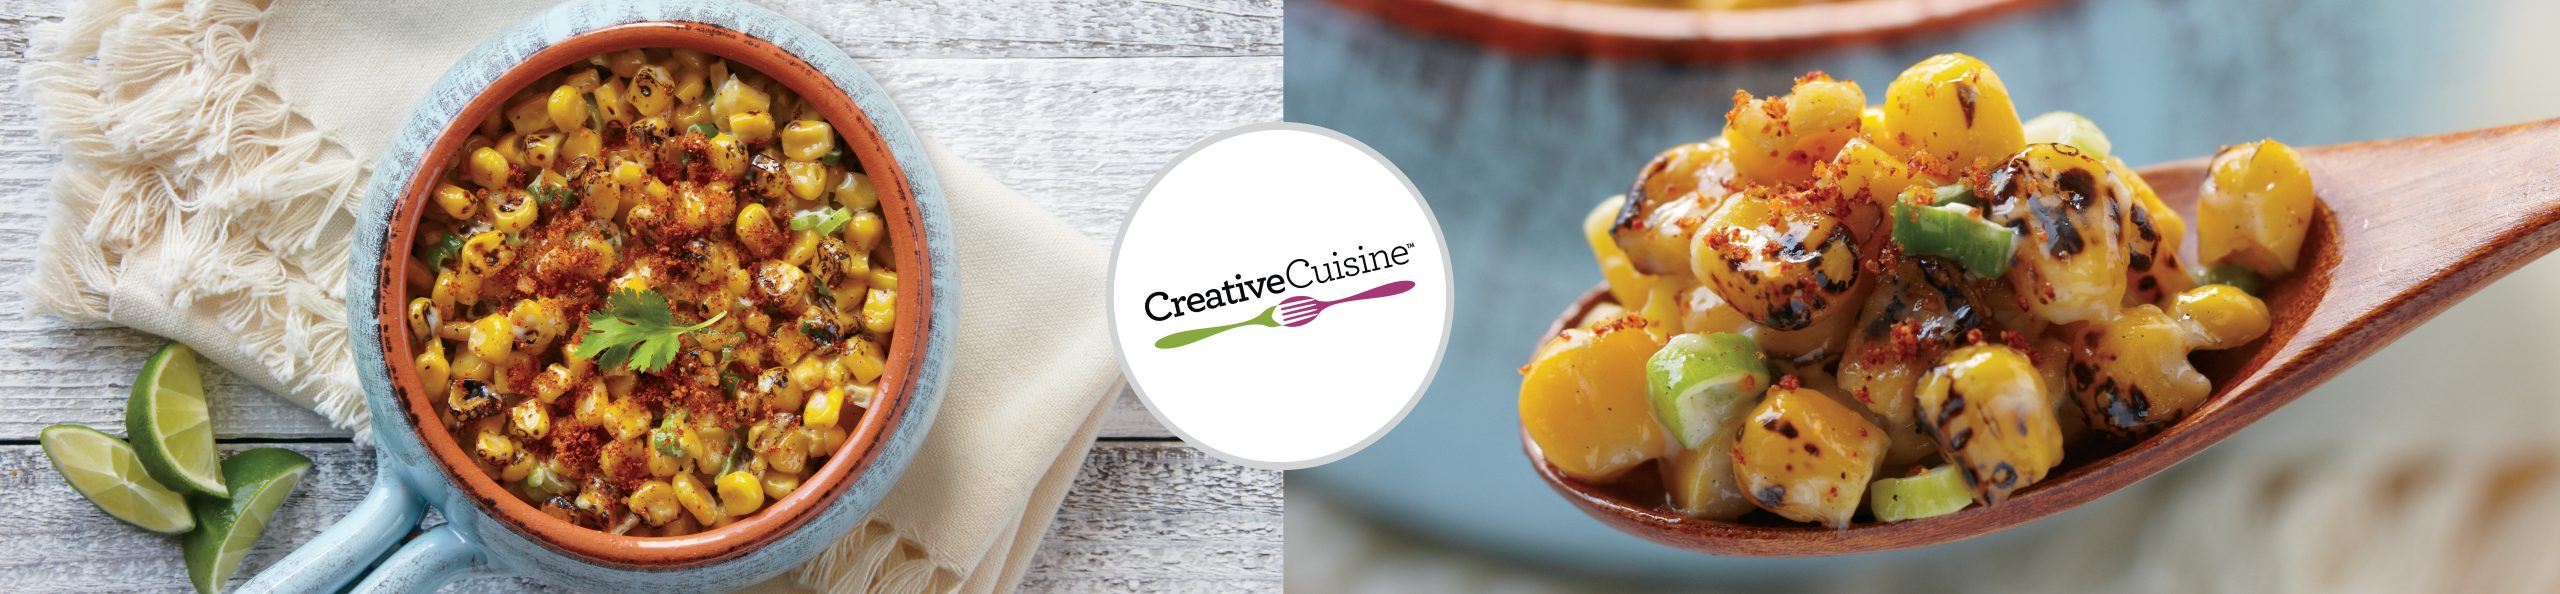 Creative-Cuisine-website